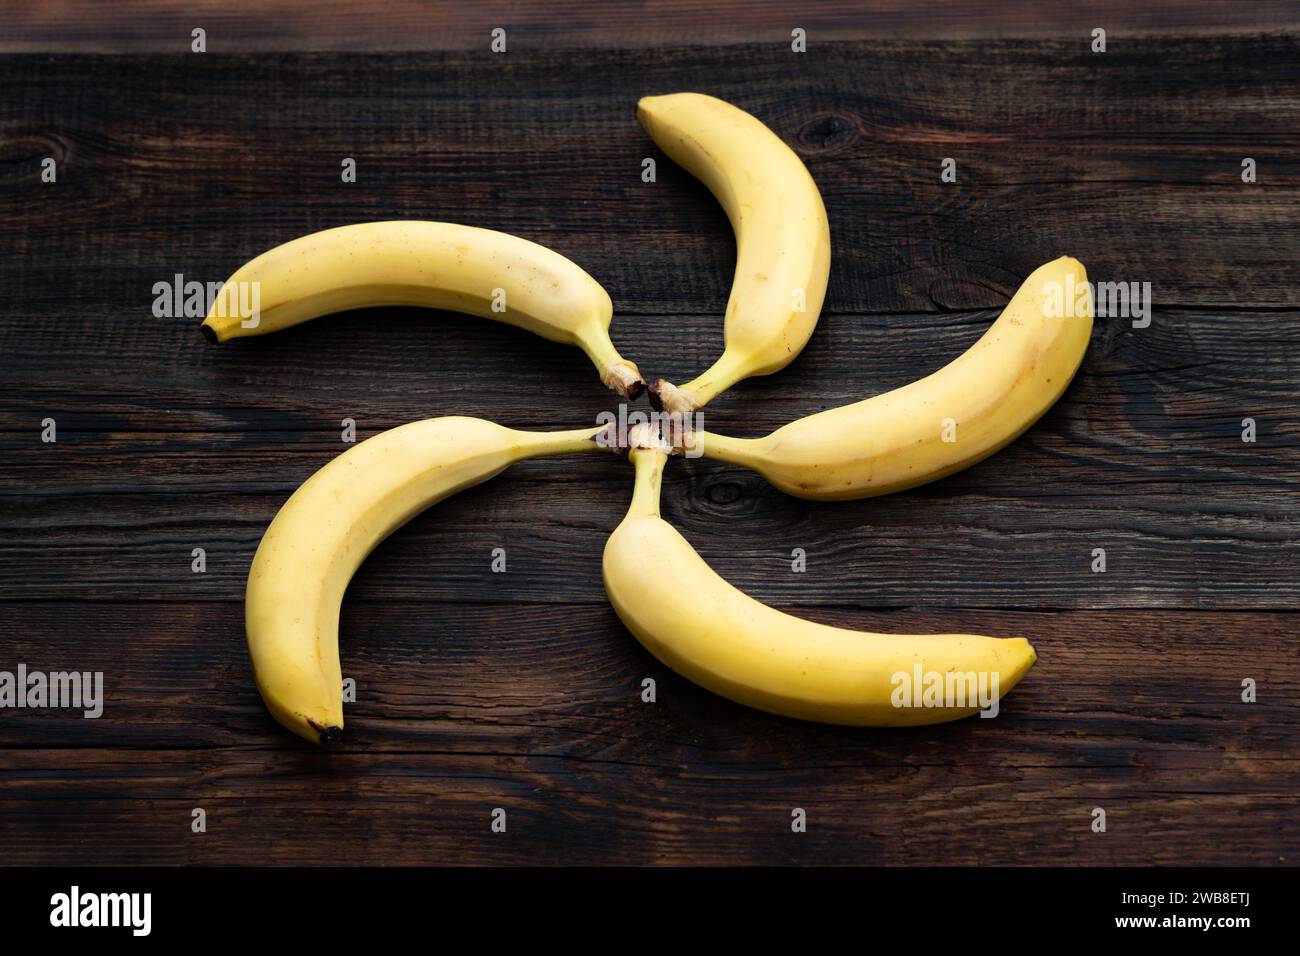 Bananes sur une table en bois. un bouquet de bananes jaune mûr sur la table de la cuisine. vue d'en haut. les bananes sont empilées en forme de soleil, cercle Banque D'Images